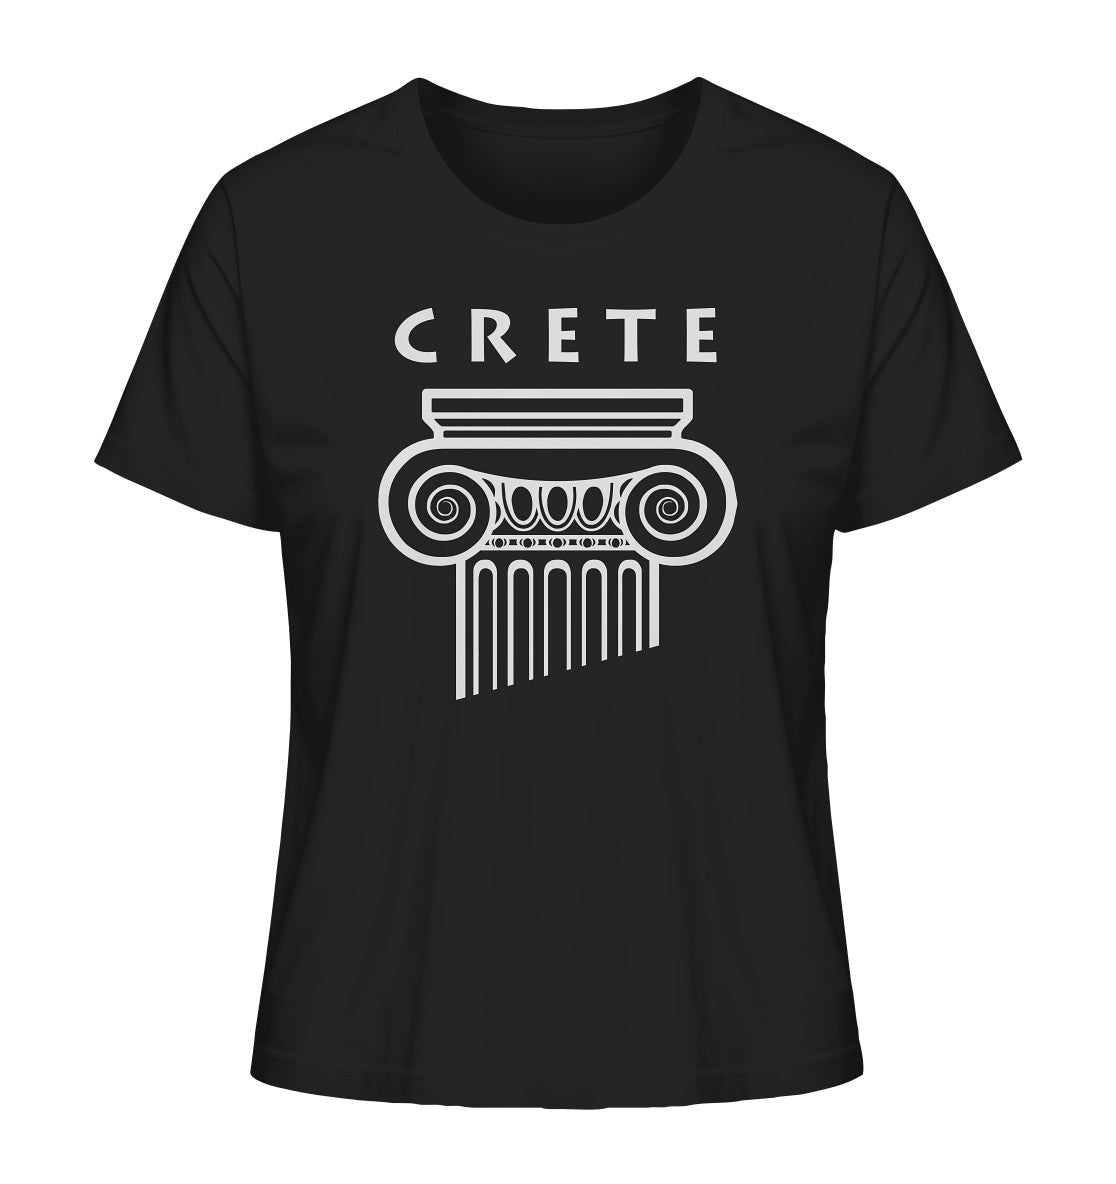 Crete Griechischer Säulenkopf - Ladies Organic Shirt